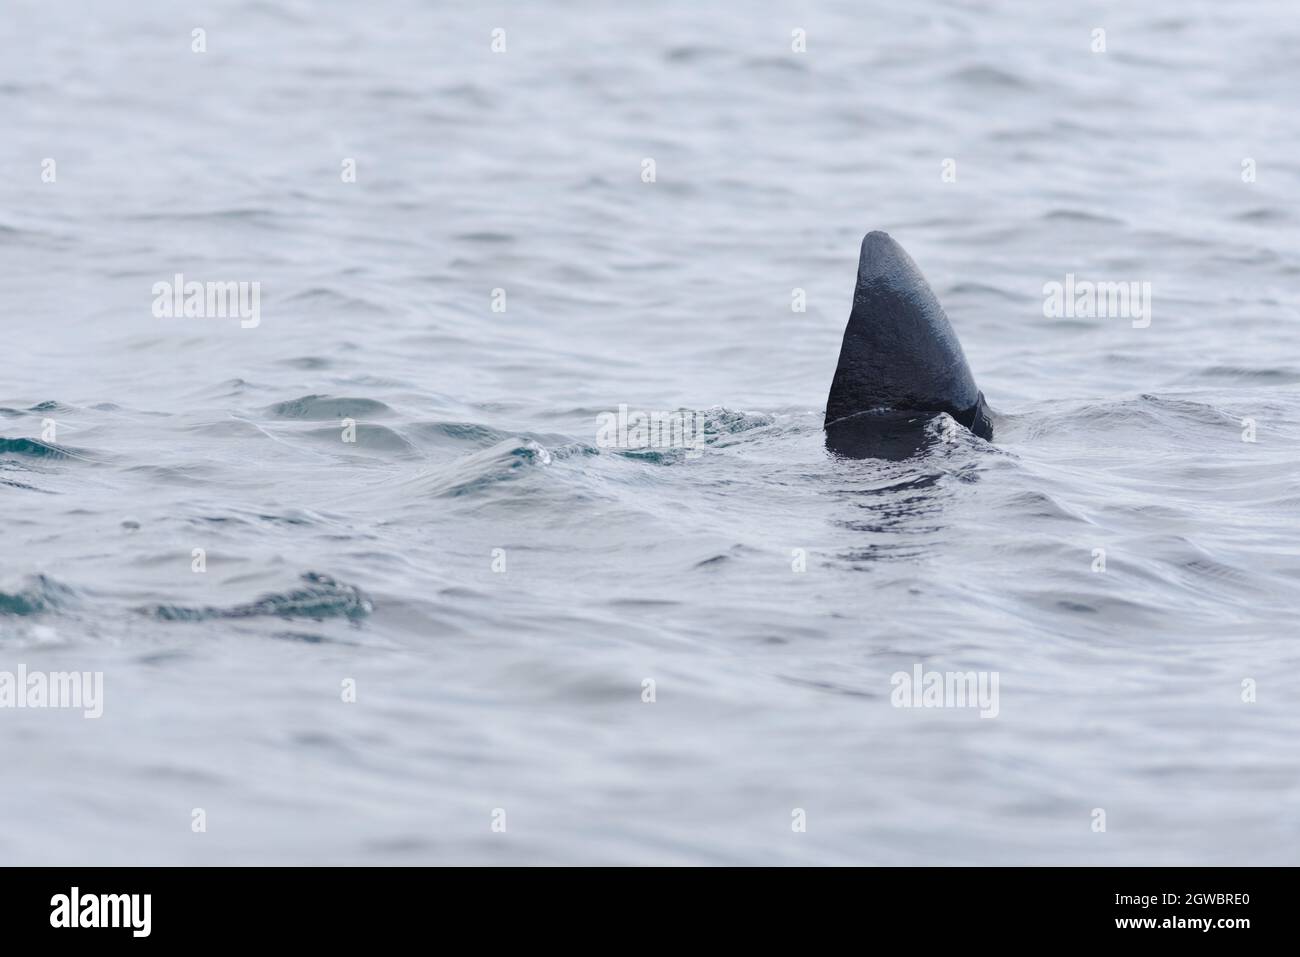 3 - immagine croccante della pinna dorsale nera scura di uno squalo che nuotano fuori dalla cornice. Foto Stock